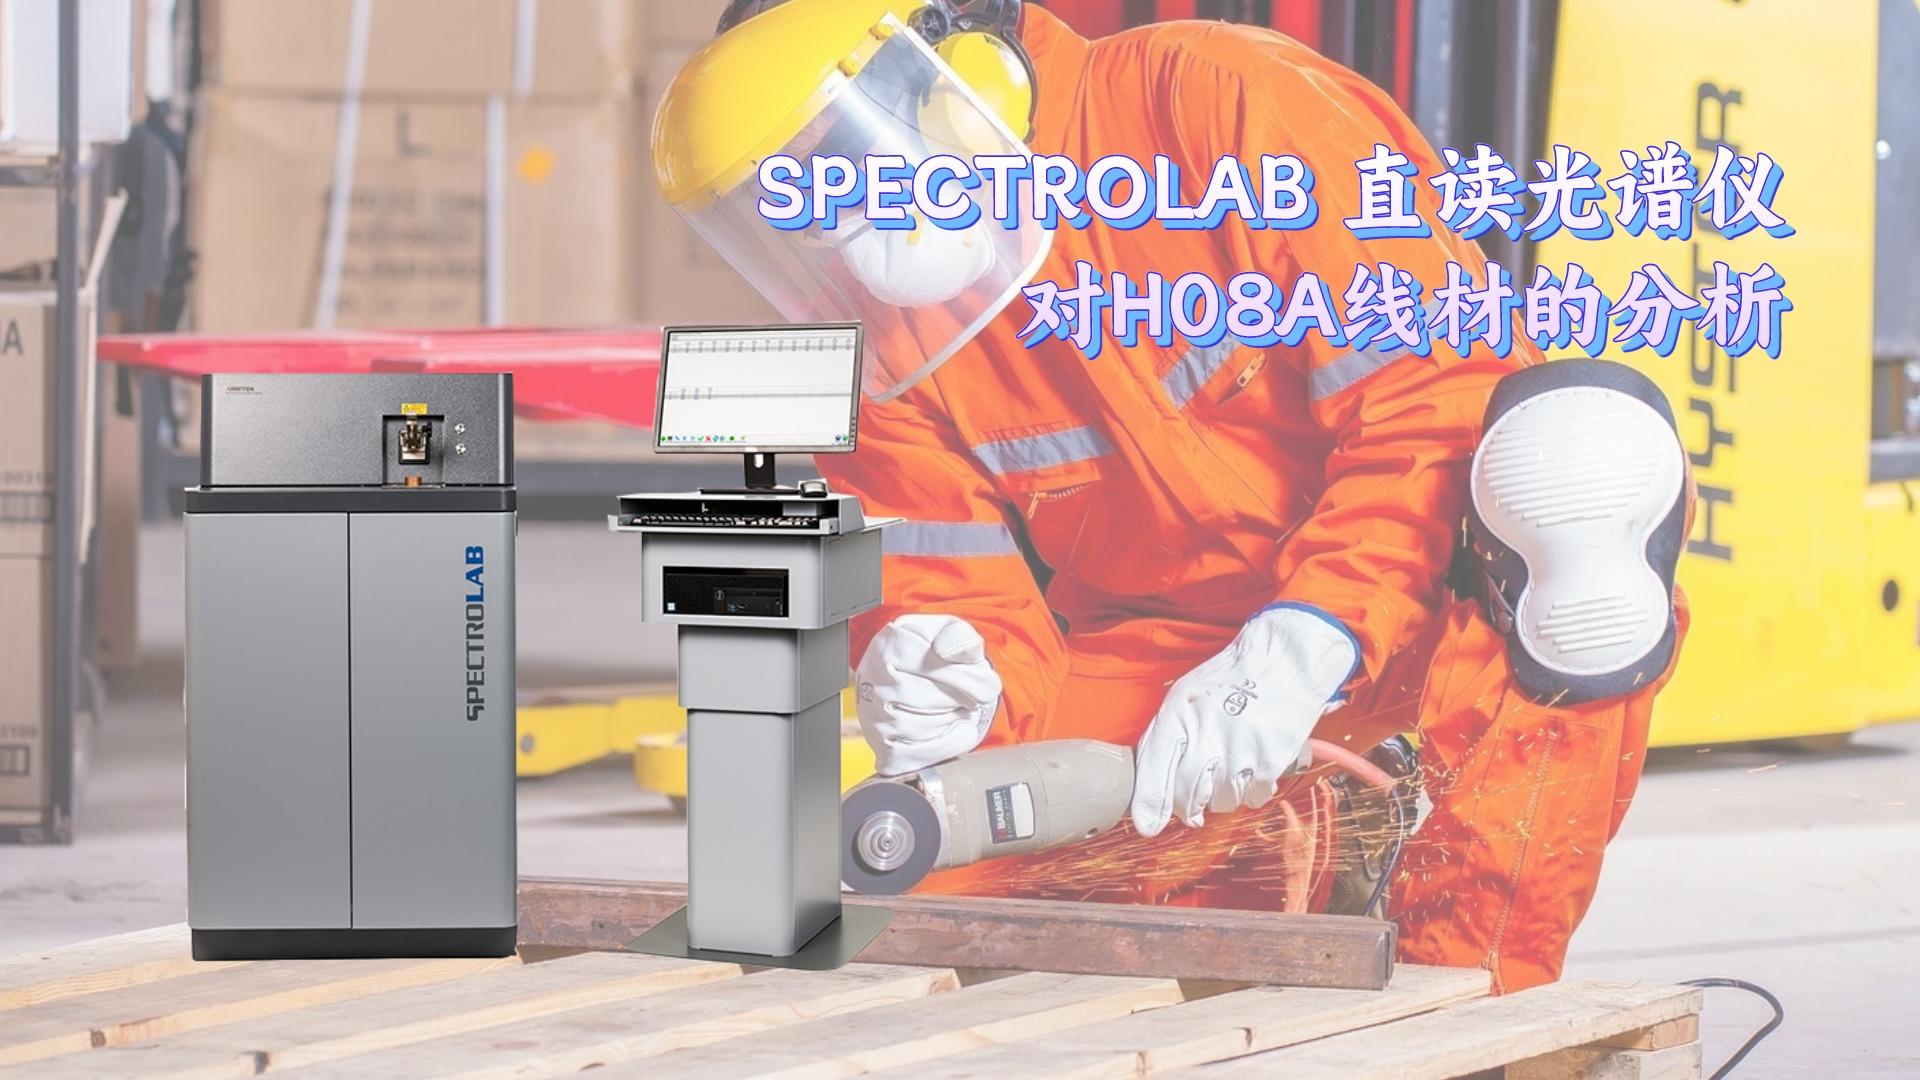 SPECTROLAB 直读光谱仪对H08A线材的分析